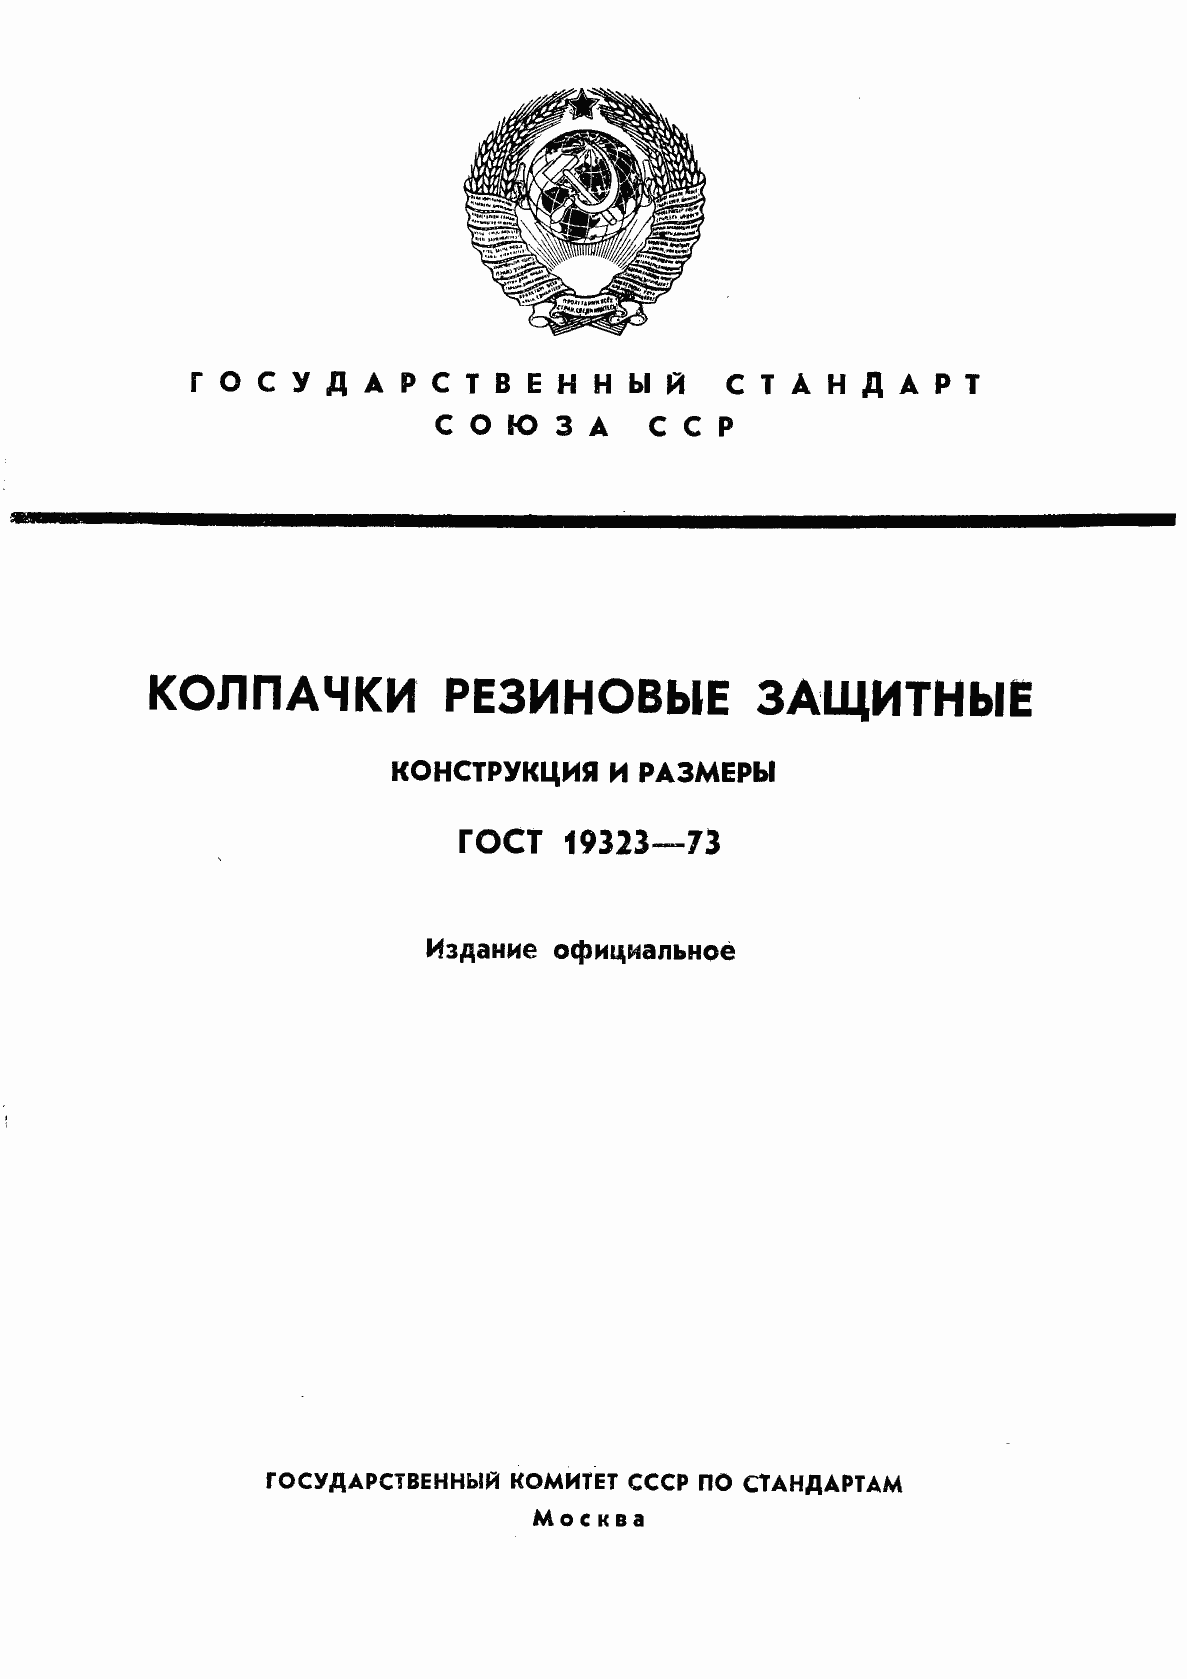  19323-73.  1